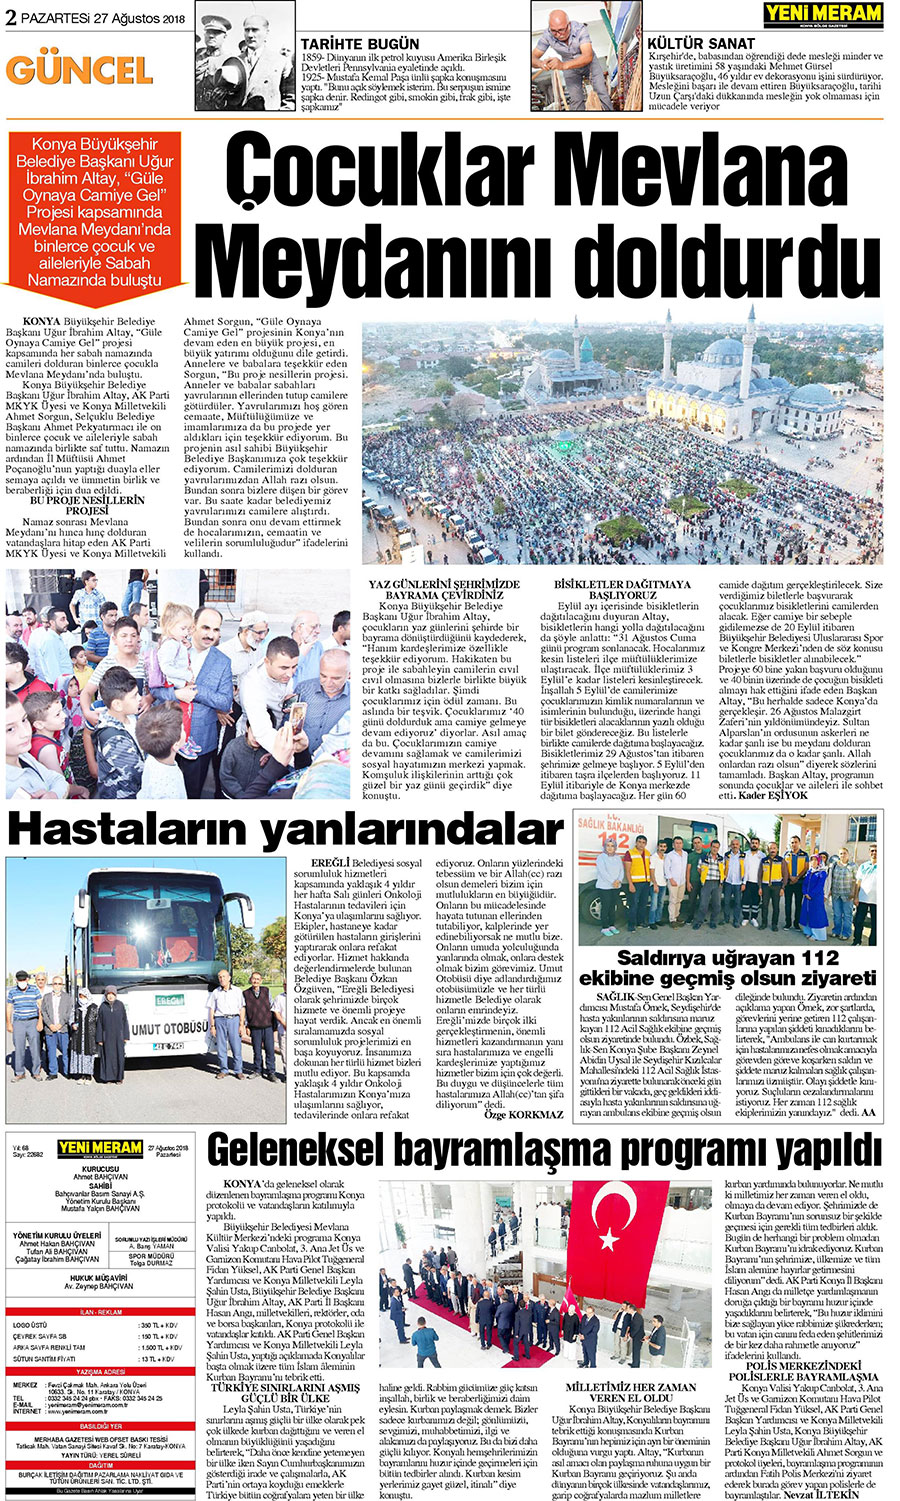 27 Ağustos 2018 Yeni Meram Gazetesi